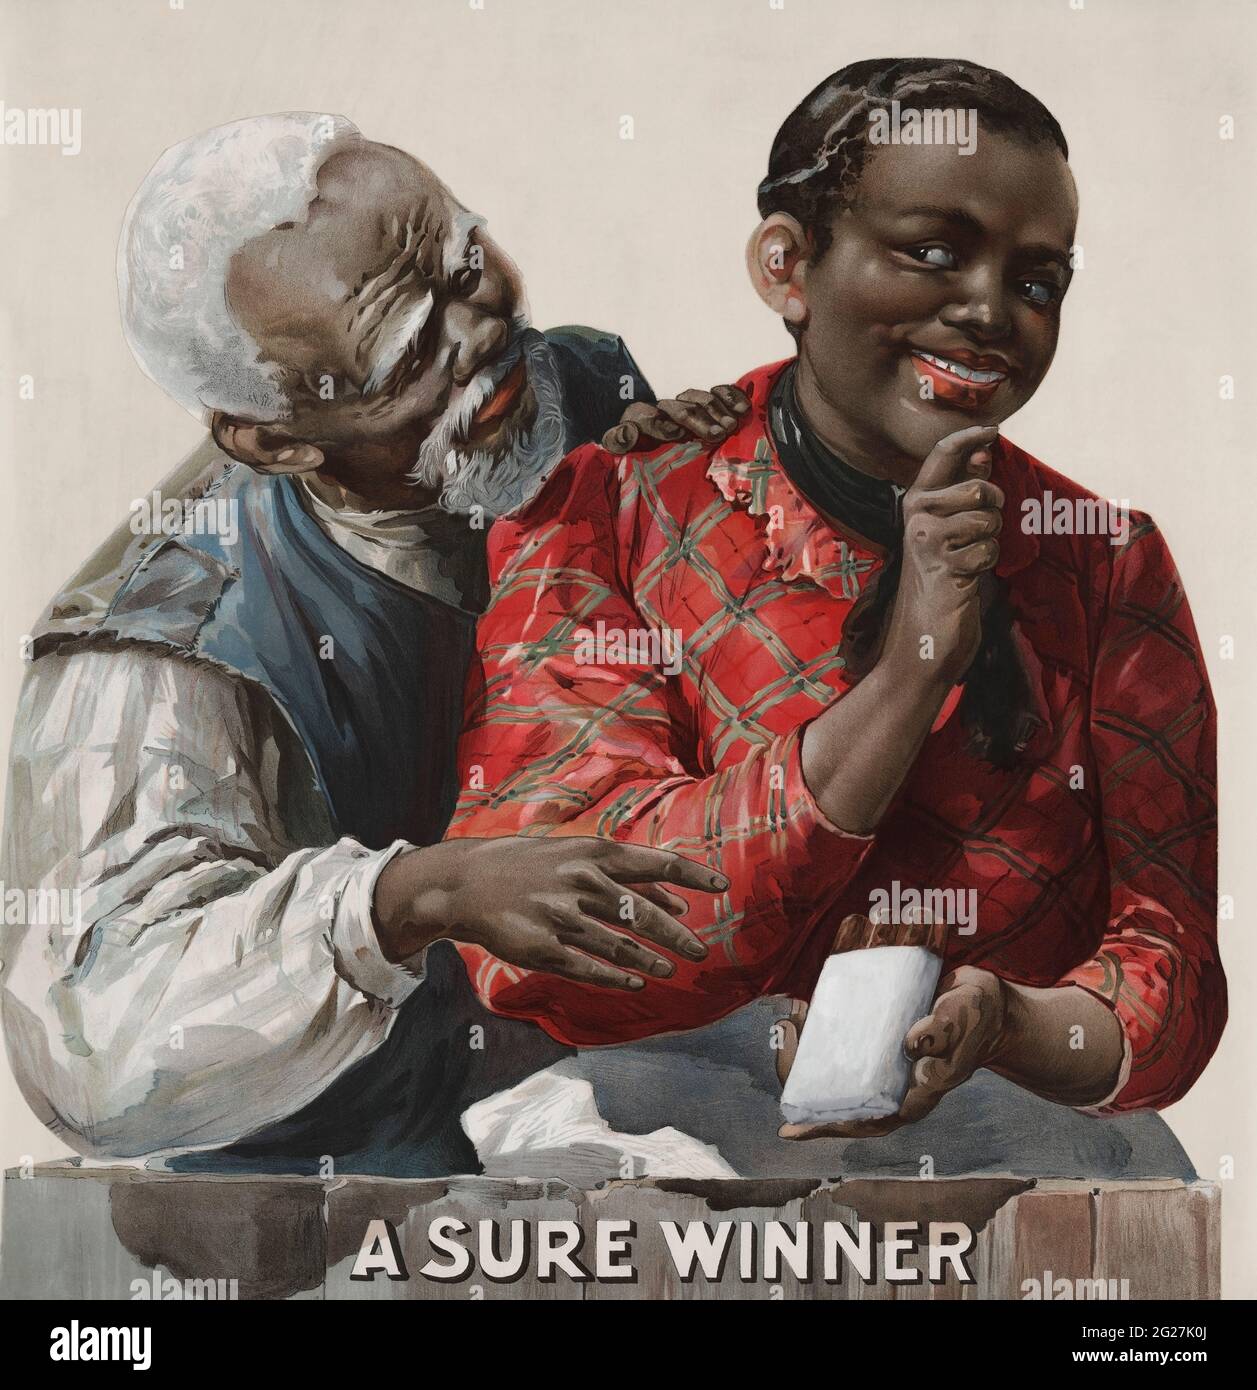 Pubblicità di una coppia afroamericana in cui la donna sta offrendo all'uomo un sigaro. Foto Stock